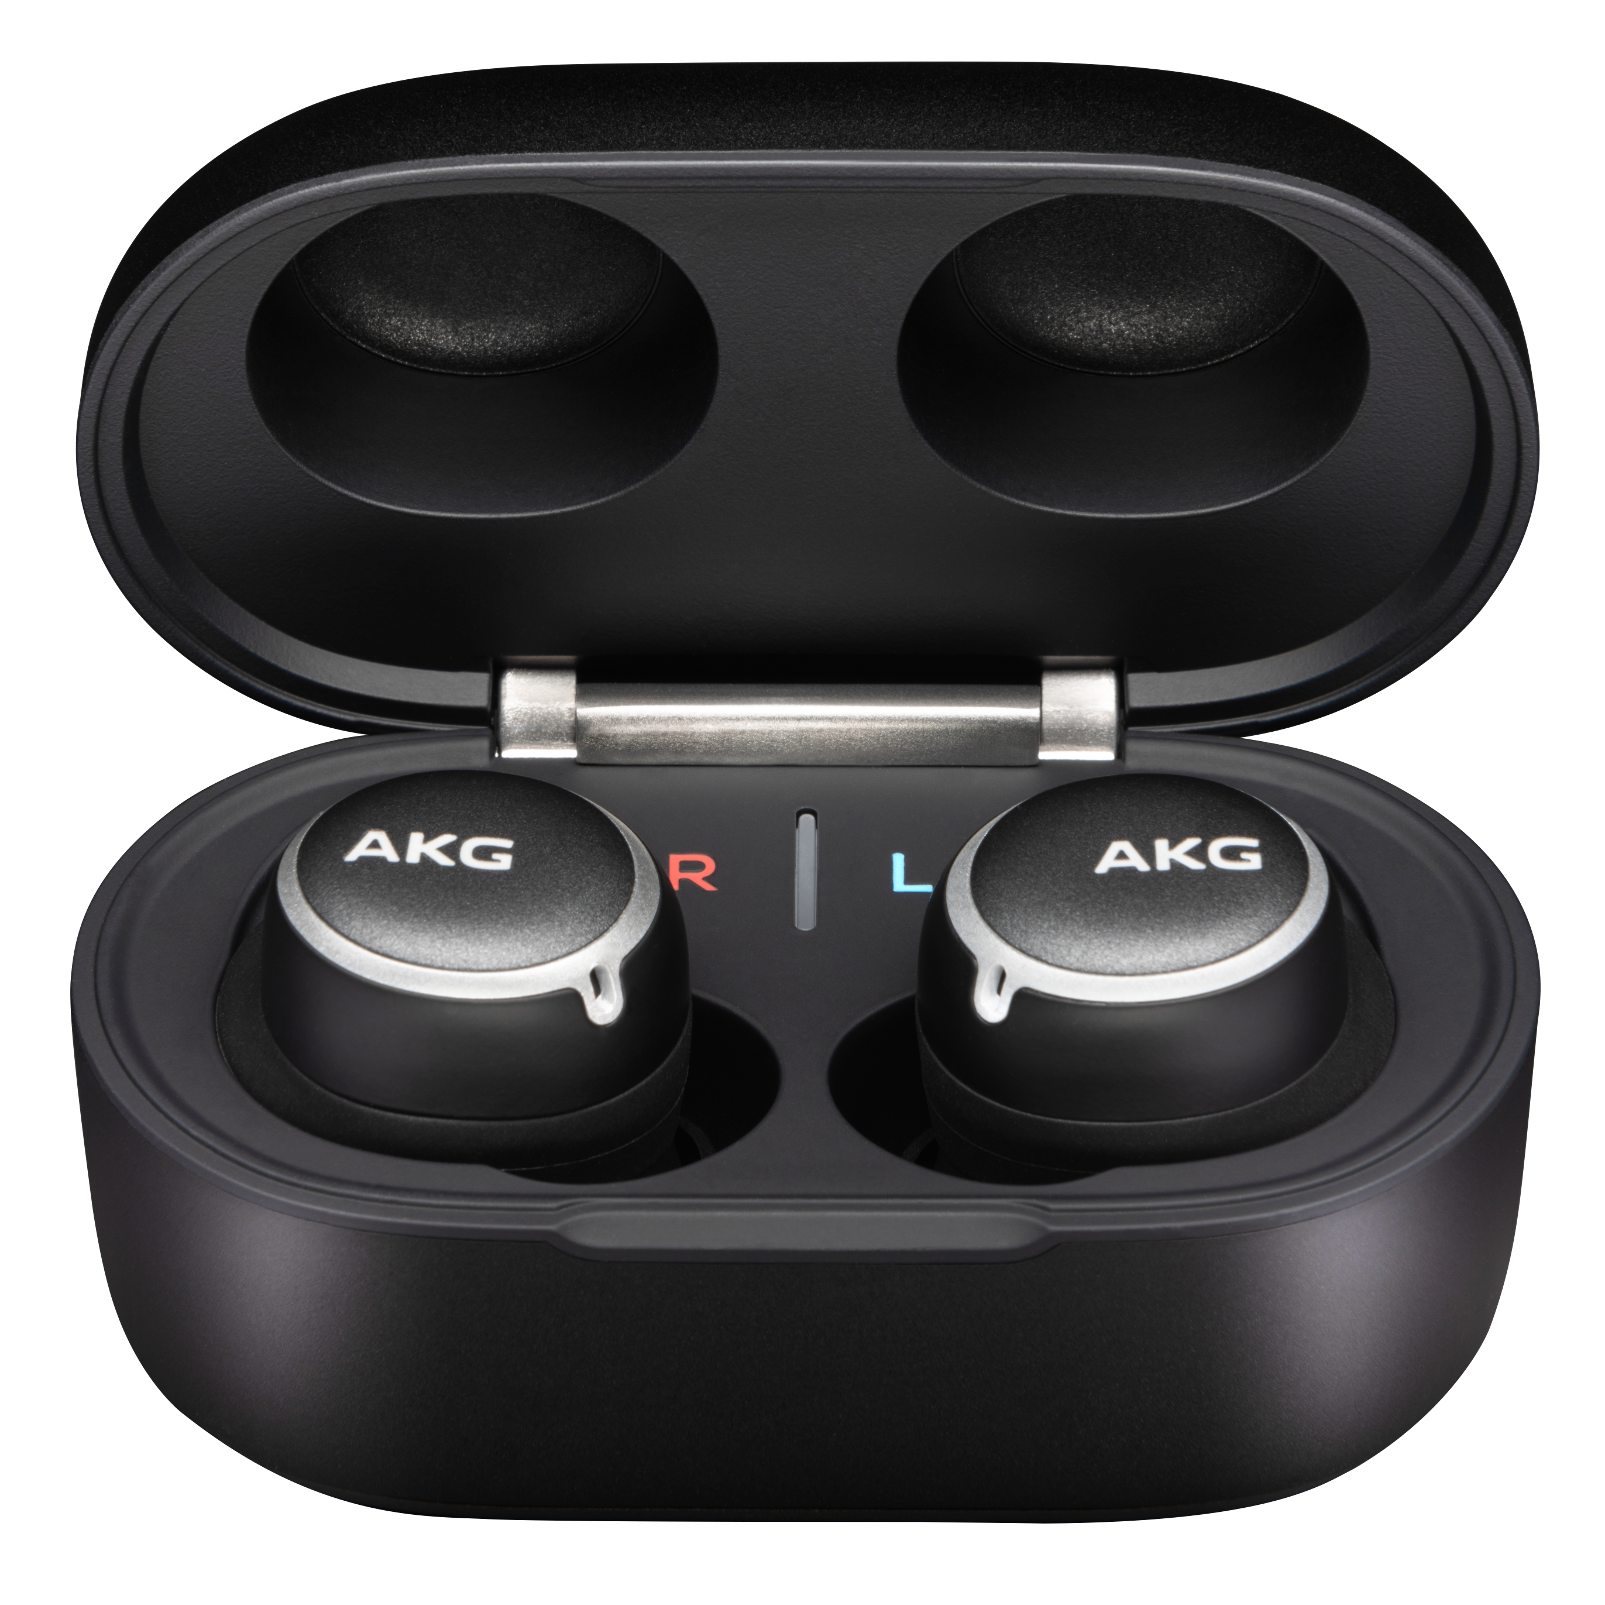 AKG Feb Hot Deals | AKG N400NC TWS Sale $47.99